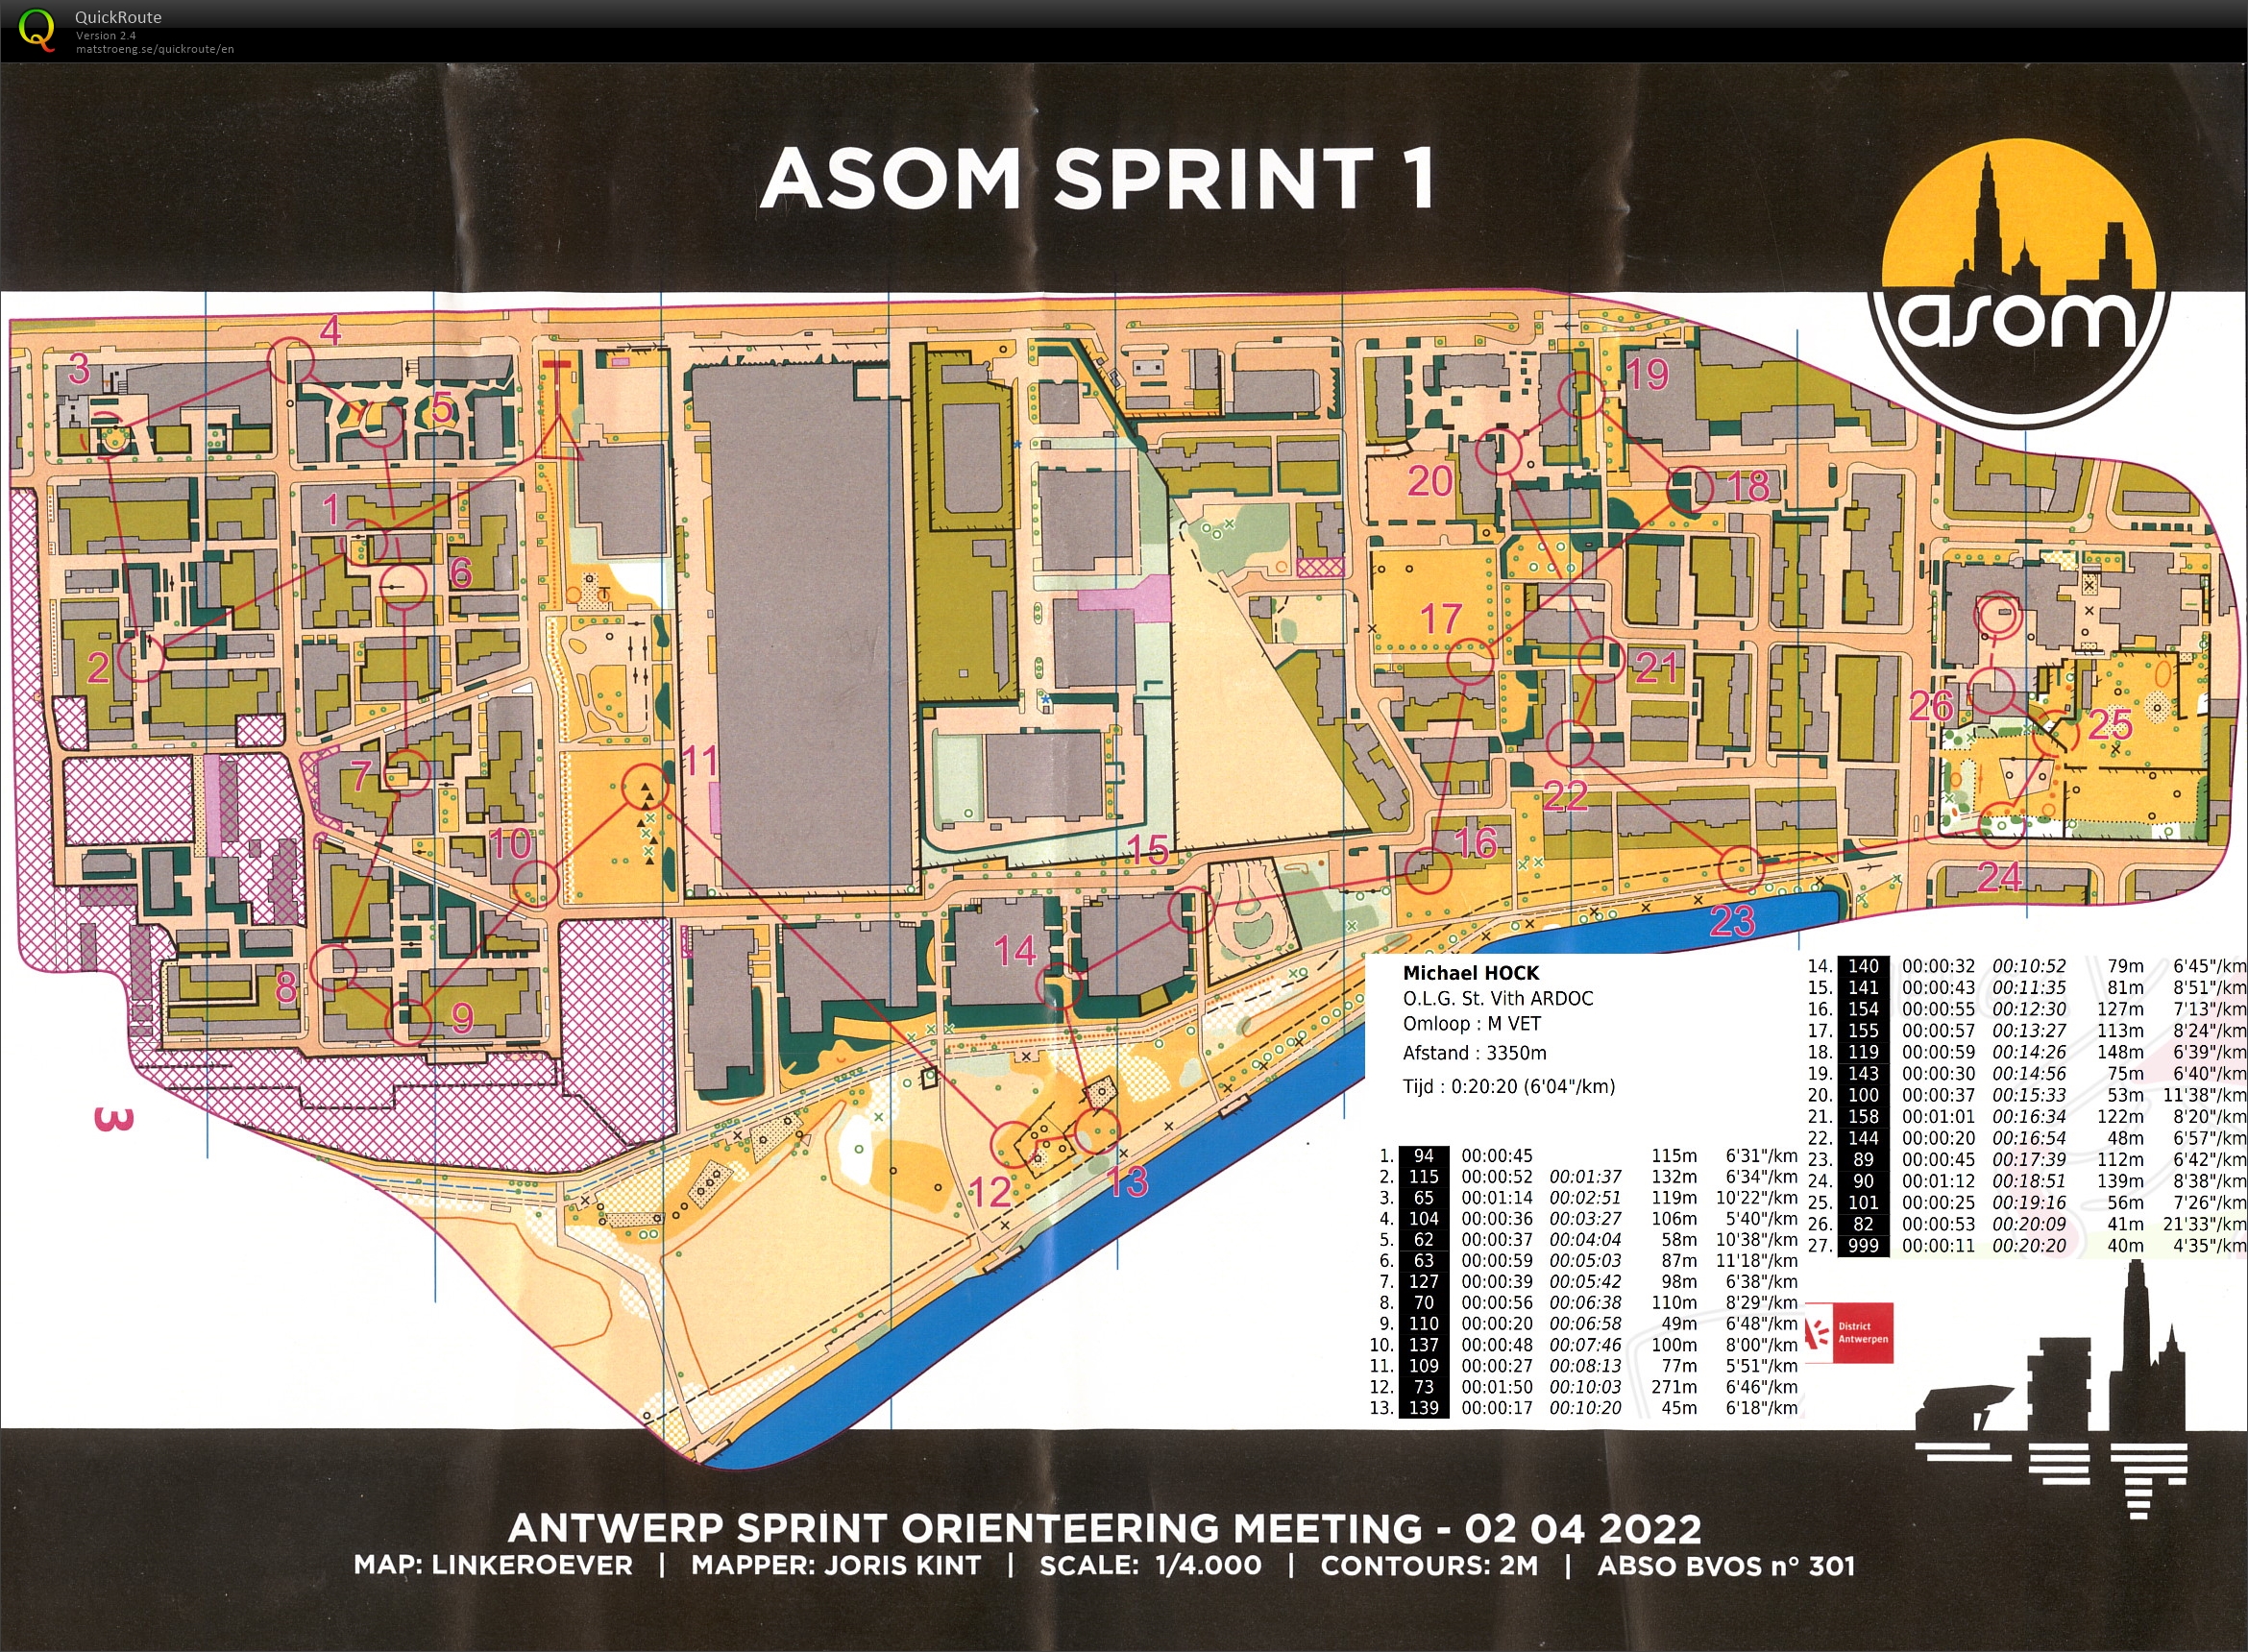 ASOM Sprint 1 (02.04.2022)